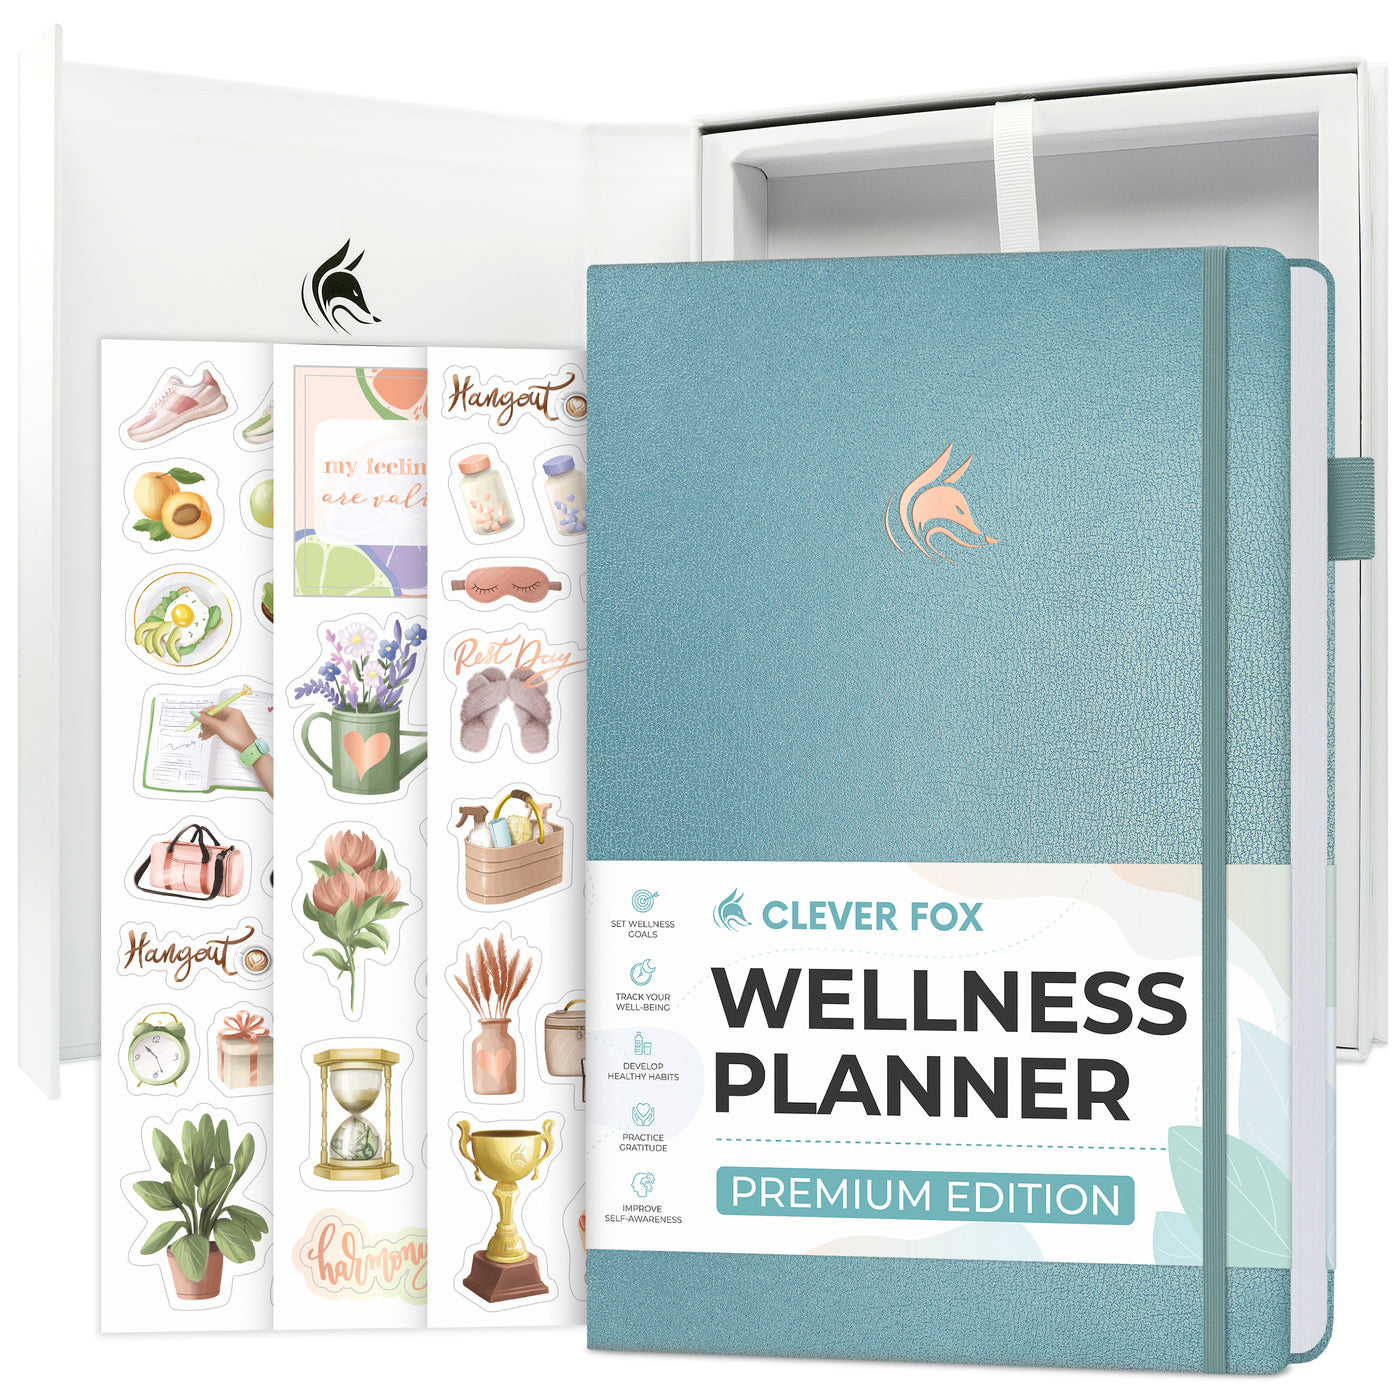 Wellness Planner Premium - lasts 3 months